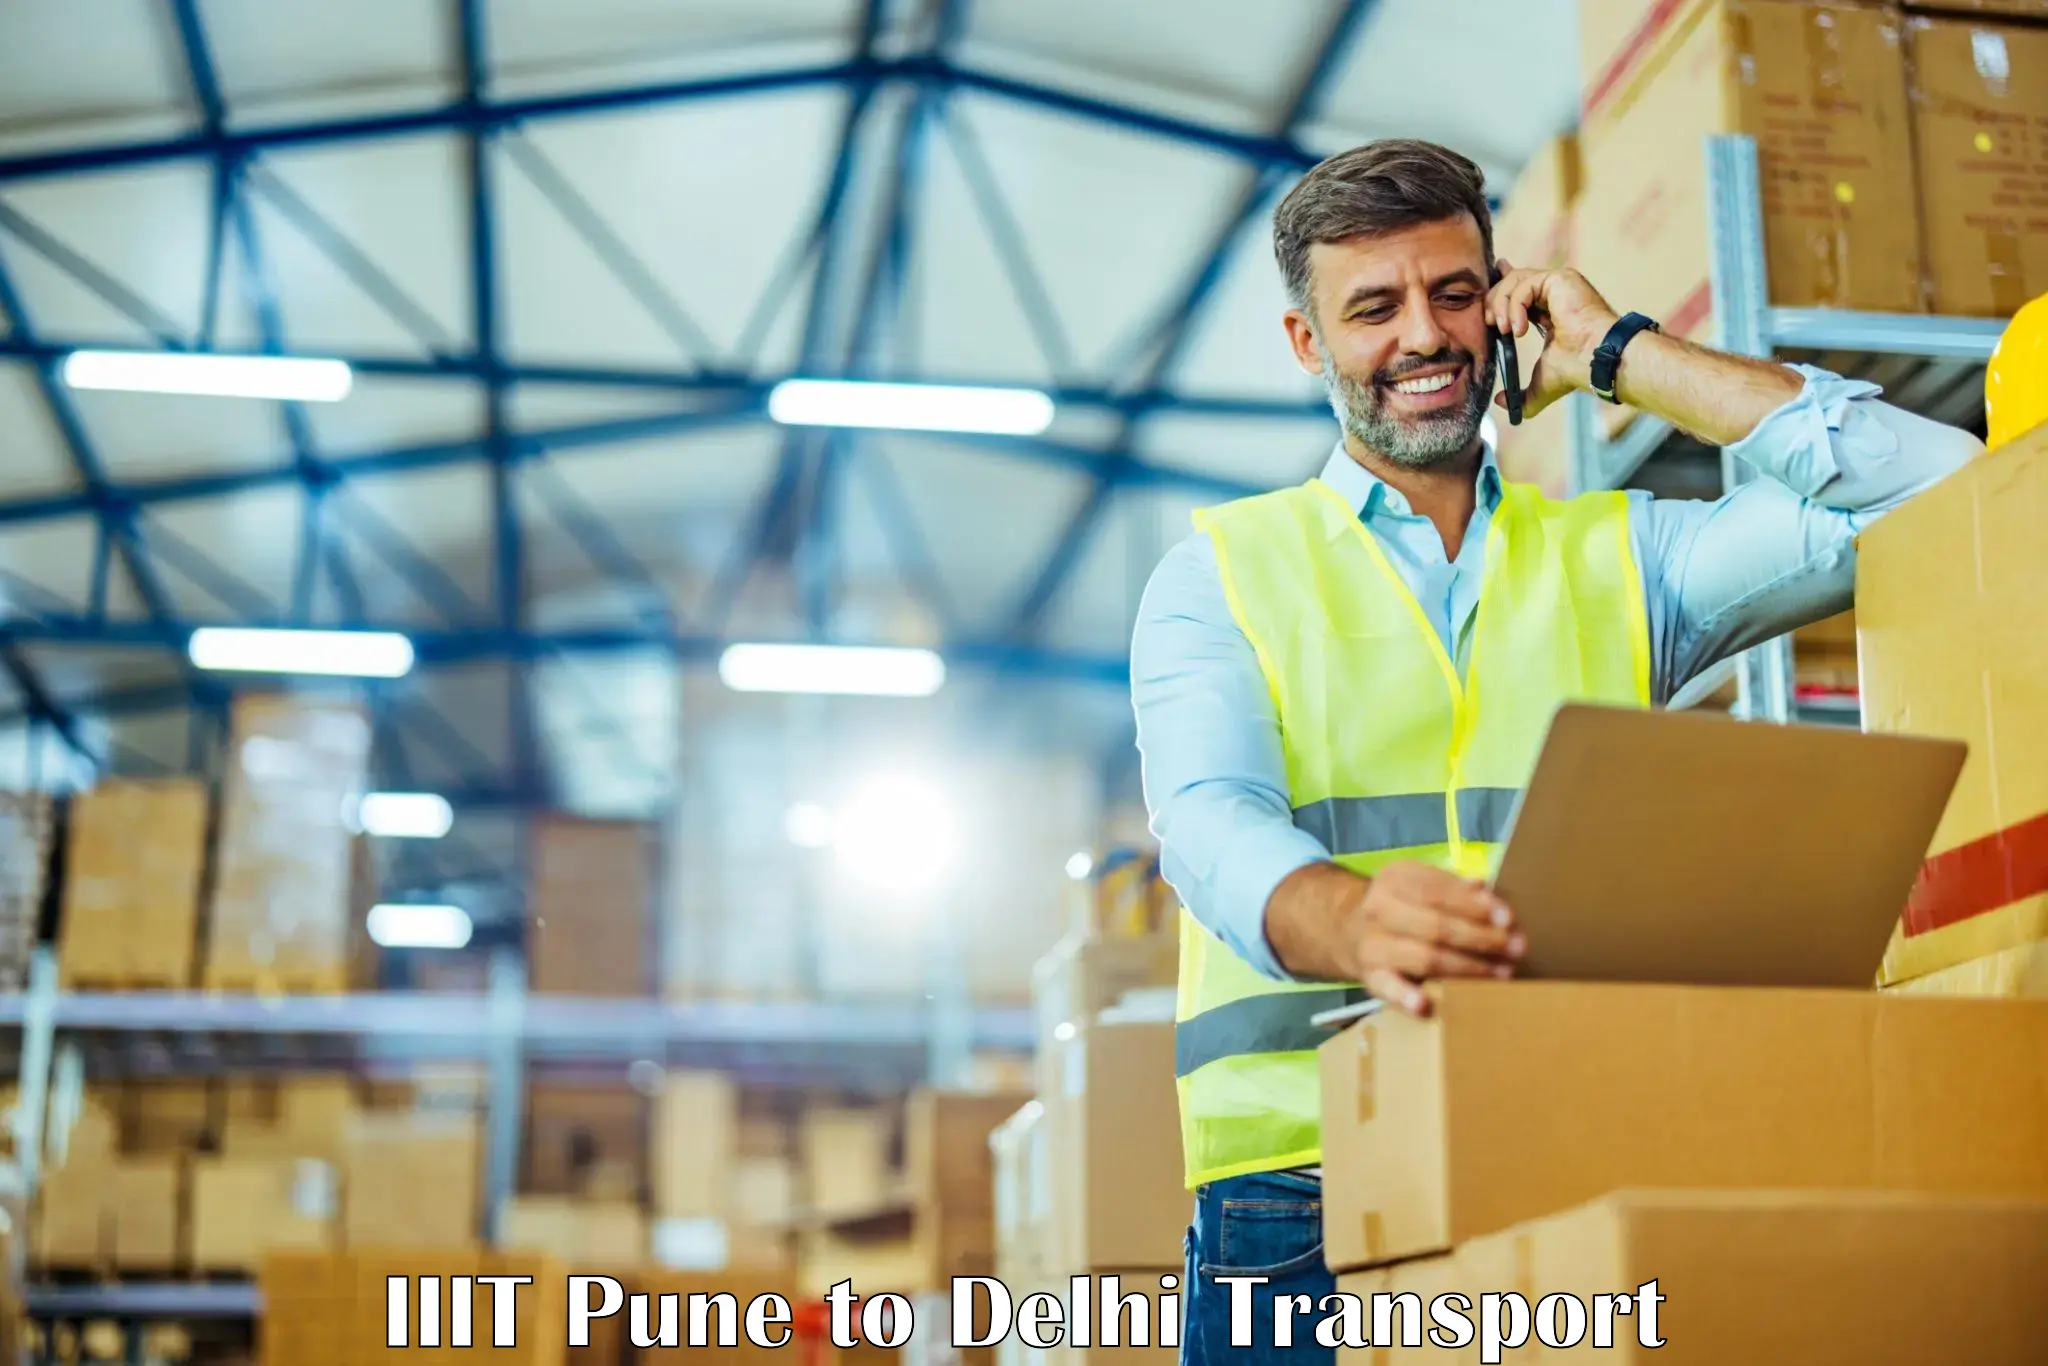 Delivery service IIIT Pune to IIT Delhi